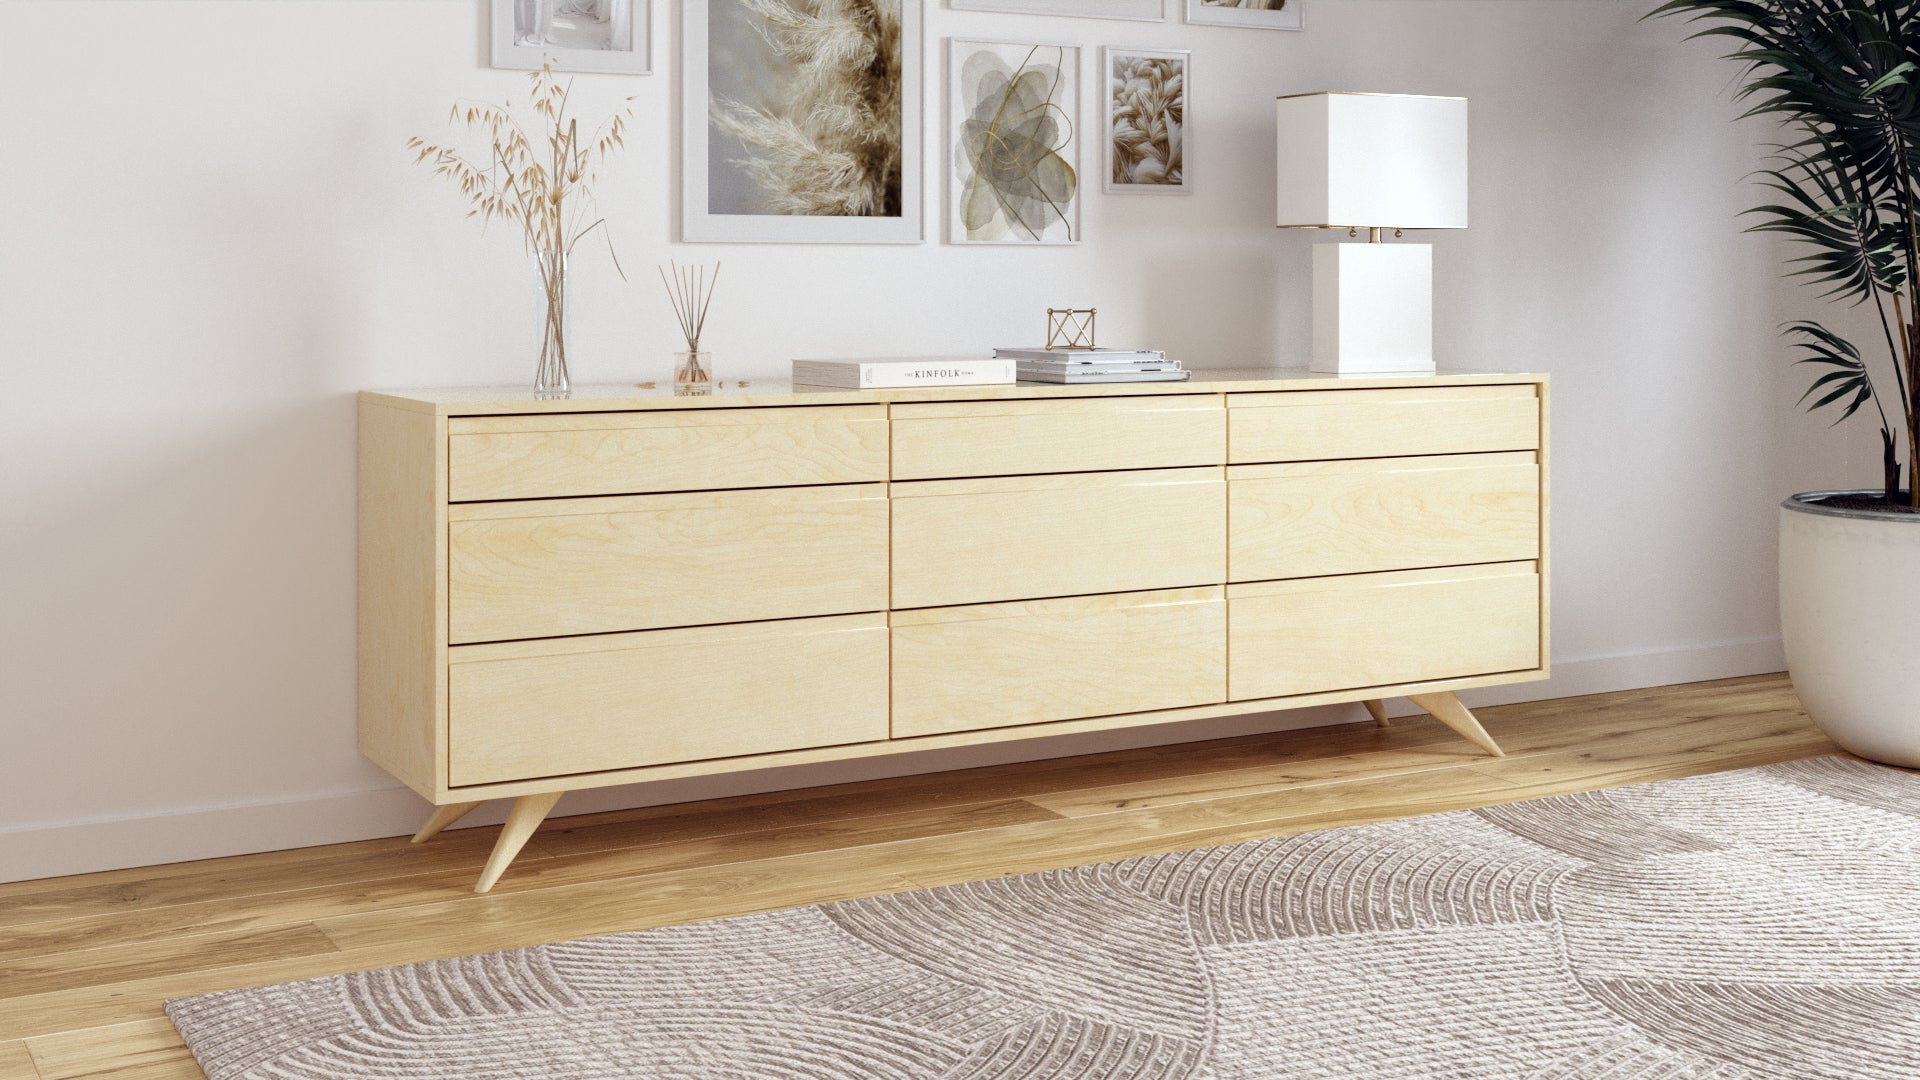 Modern Dresser - Mid-Century Modern Dresser in Solid Wood